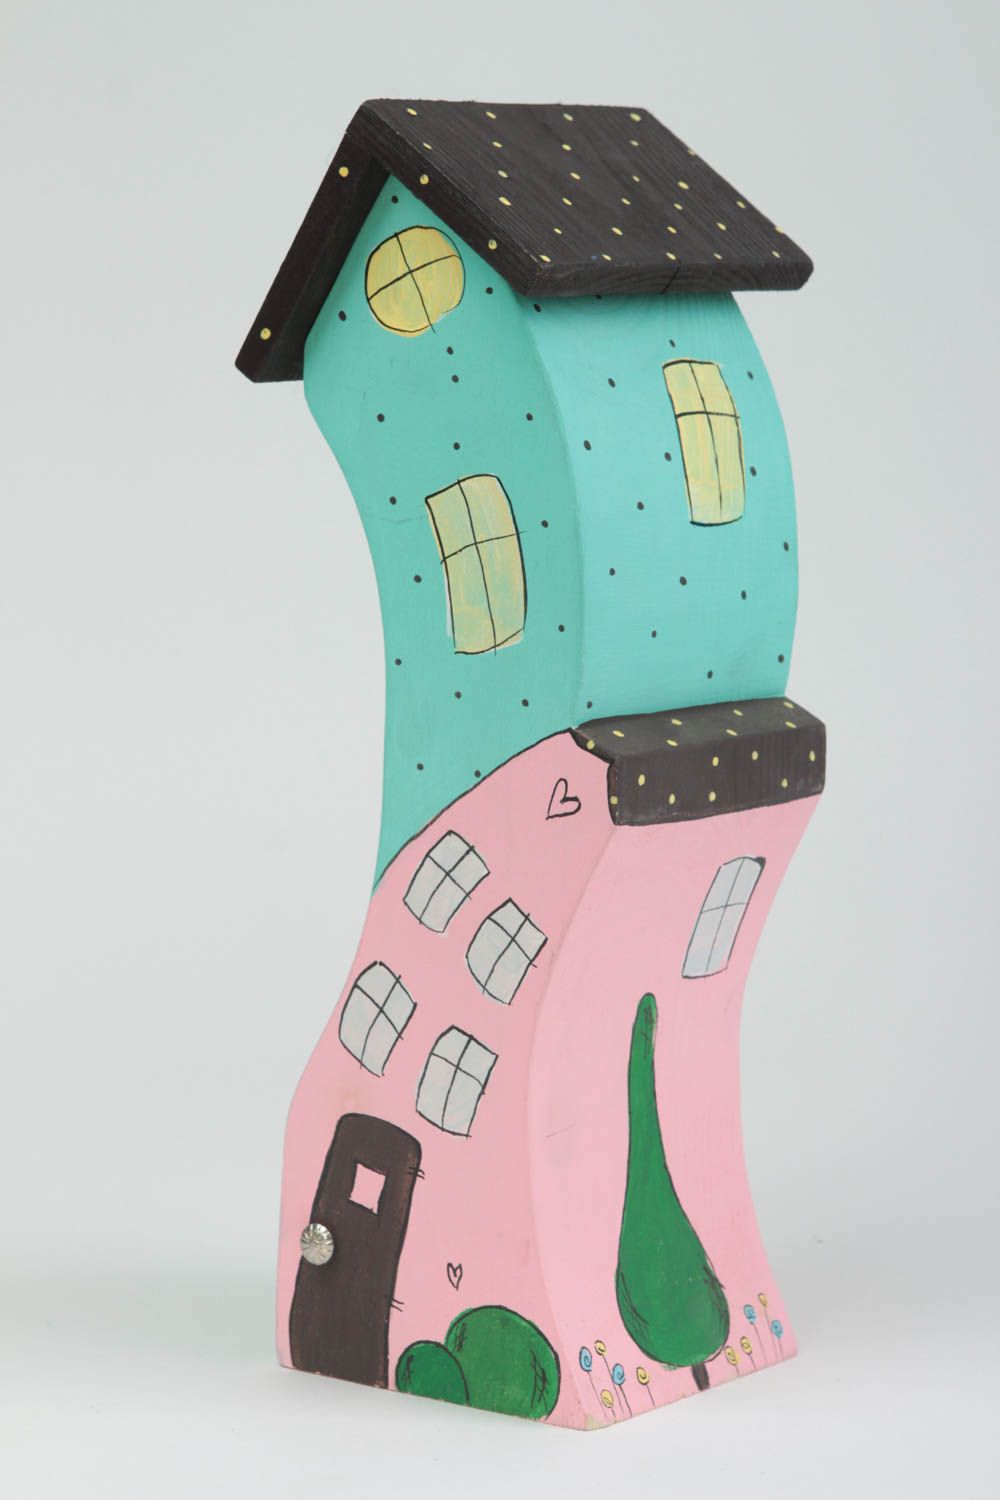 Деревянная фигурка в виде домиков яркая цветная красивая высокая ручной работы фото 2